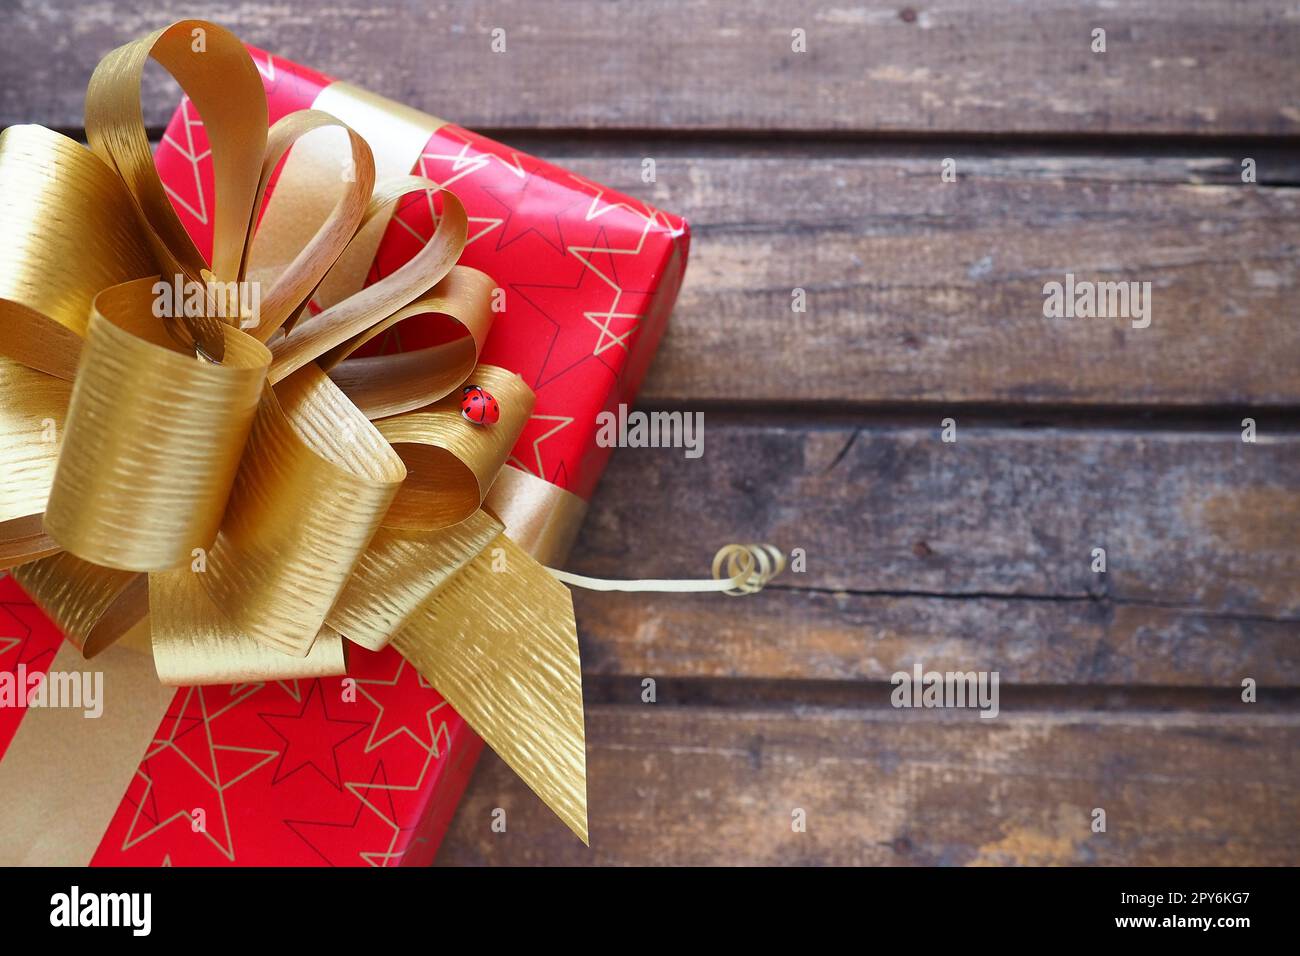 Boîte cadeau rouge avec grand noeud doré sur fond de bois. Cadeau de Noël, nouvel an, anniversaire, Fête des mères, mariage, Saint Valentin. Belle décoration de fête. Noeud luxuriant en ruban jaune. Banque D'Images